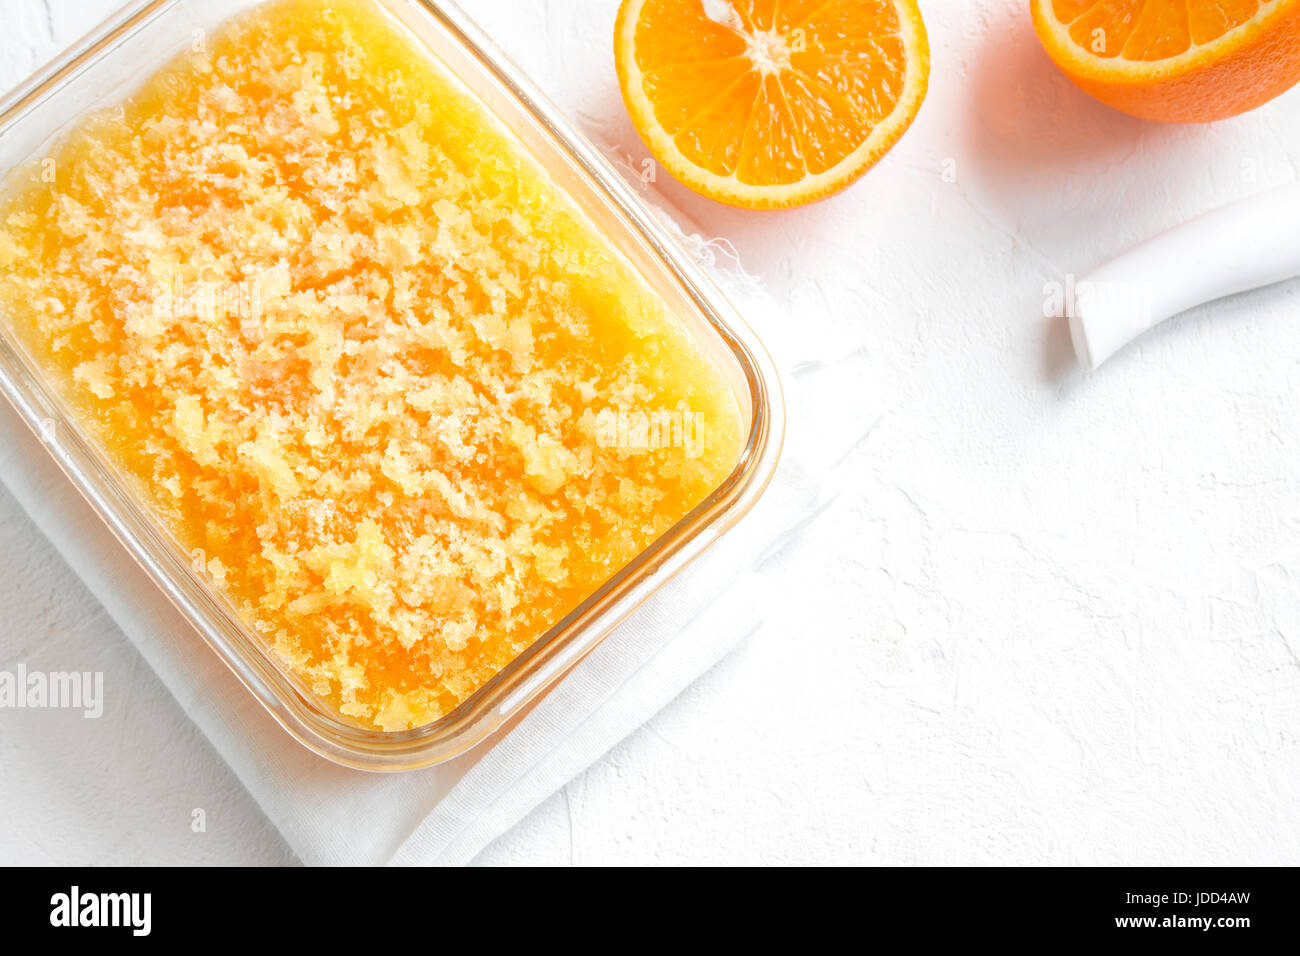 Granita Slush congelés Orange Verre sur table en bois rustique. Granita italienne maison dessert, boisson rafraîchissante Slush d'été. Banque D'Images